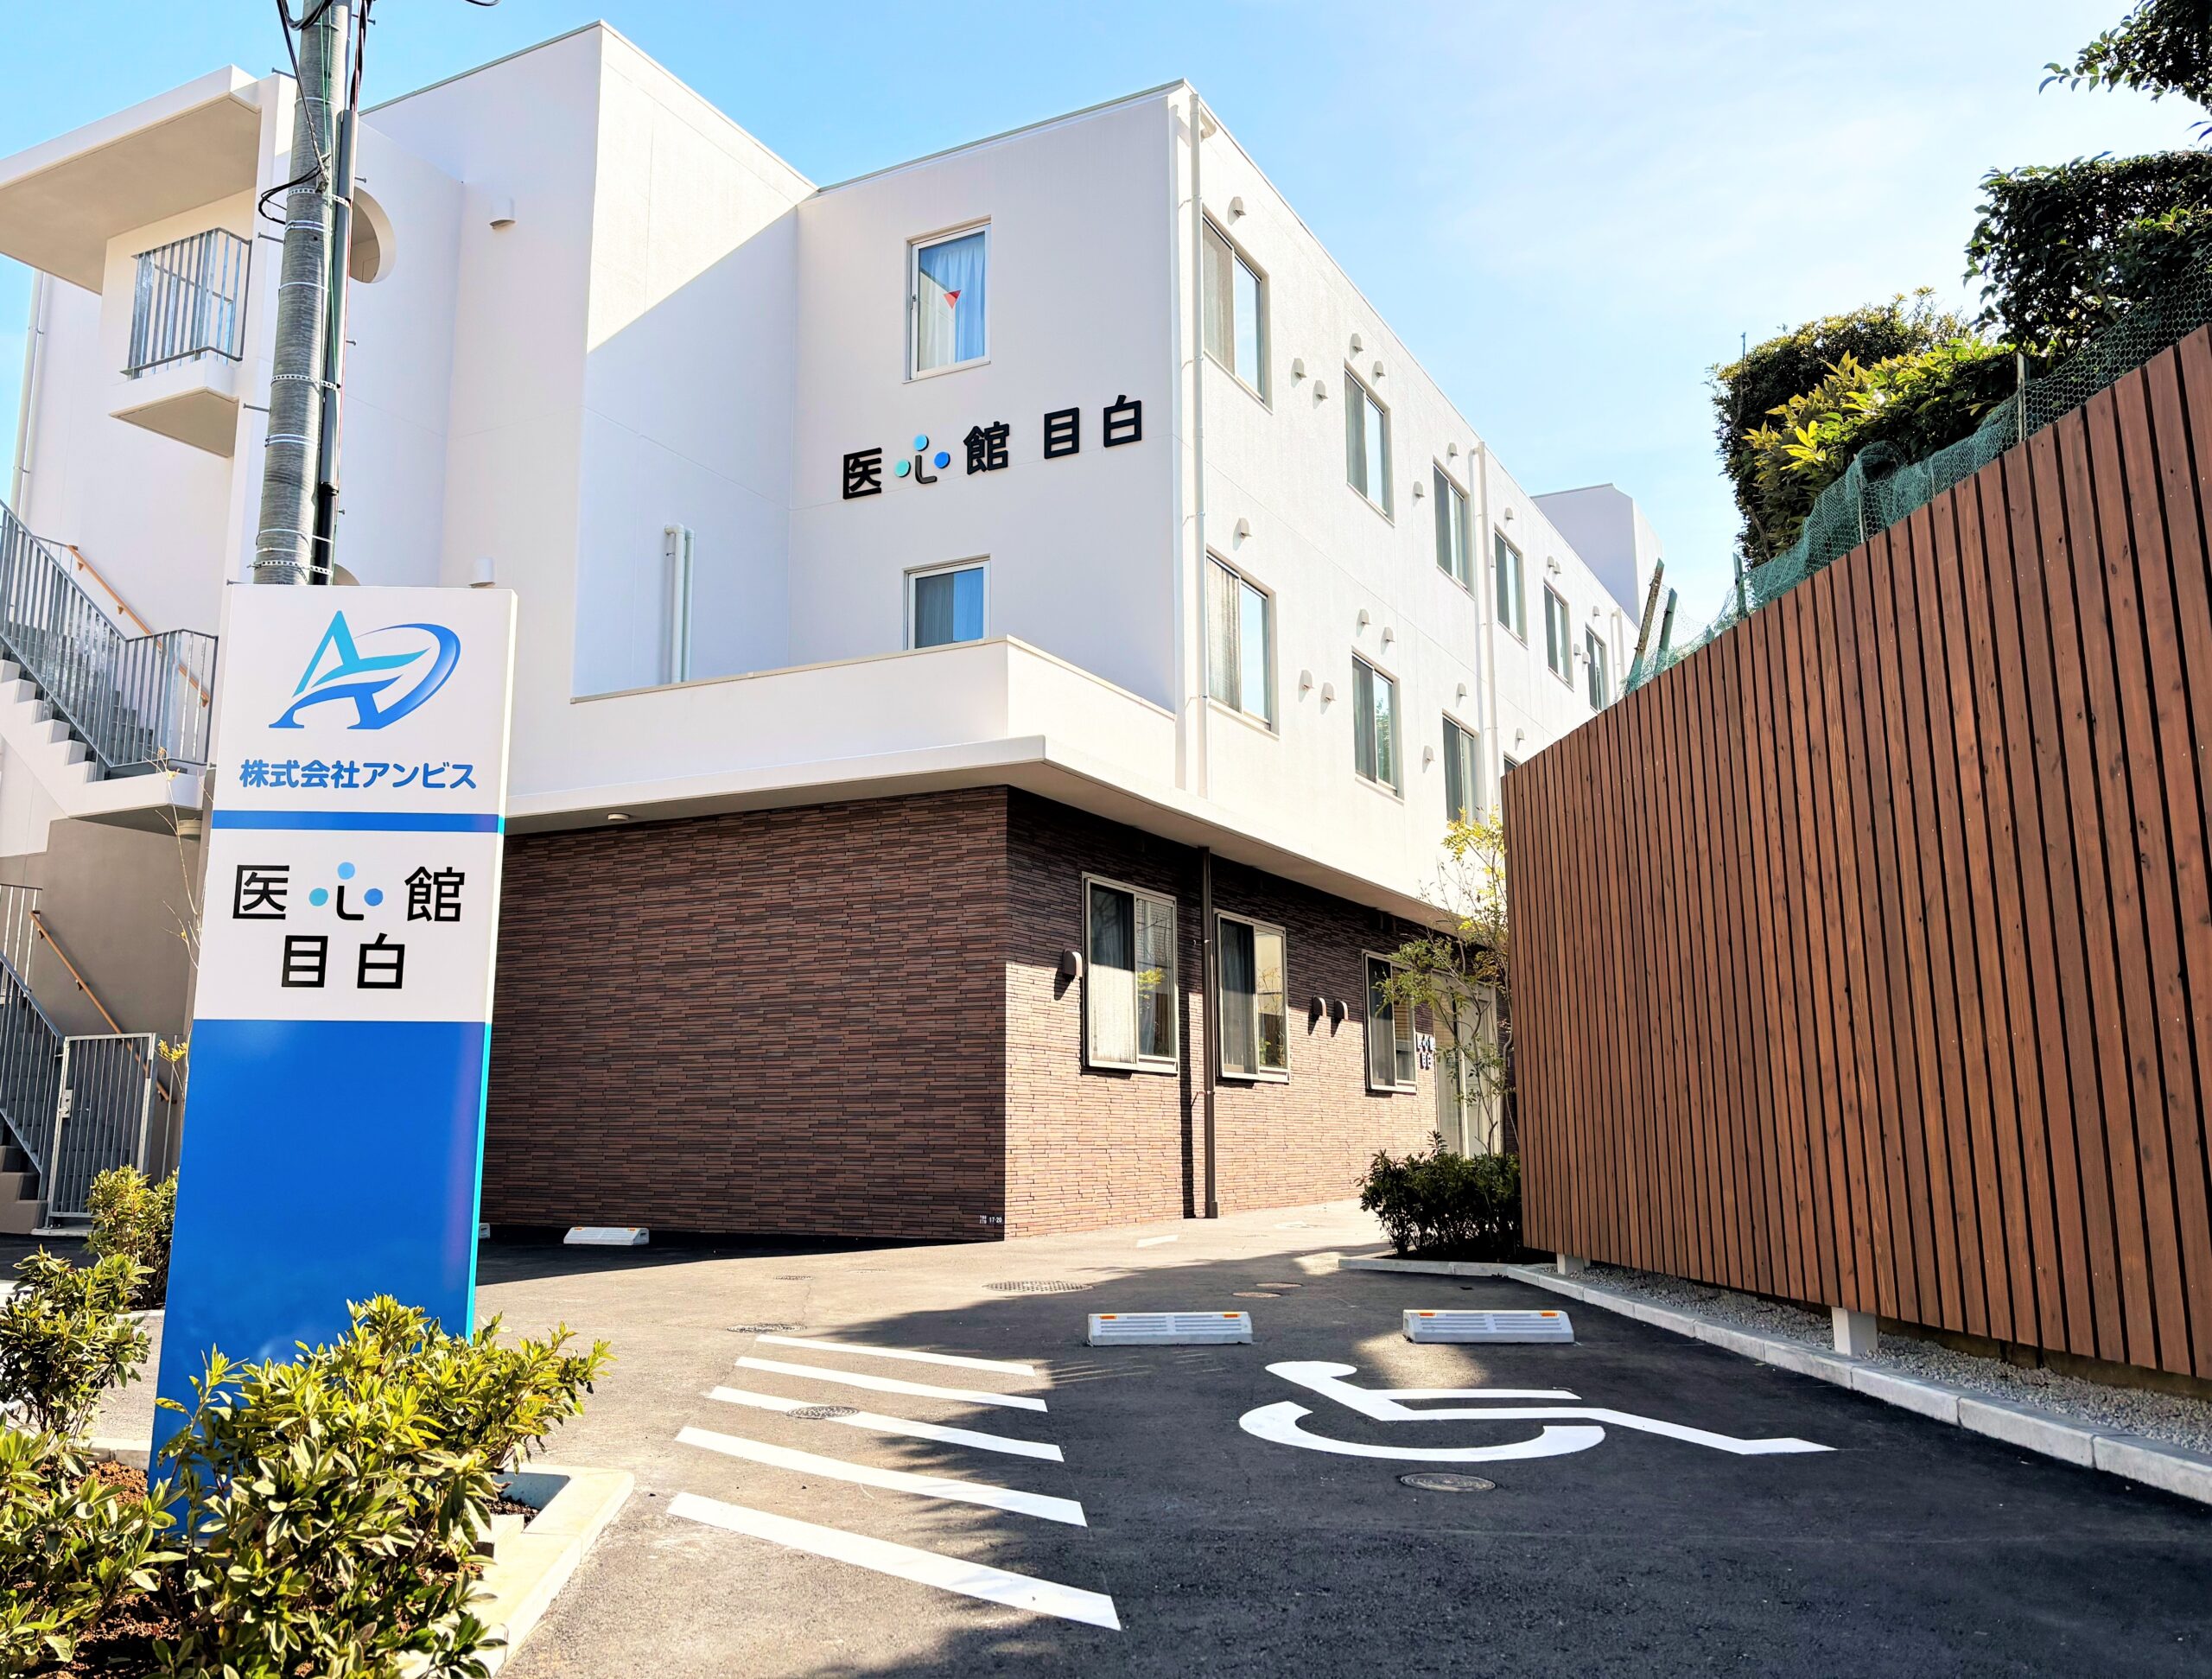 東京都では12施設目となる 有料老人ホーム「医心館 目白」をオープンしました